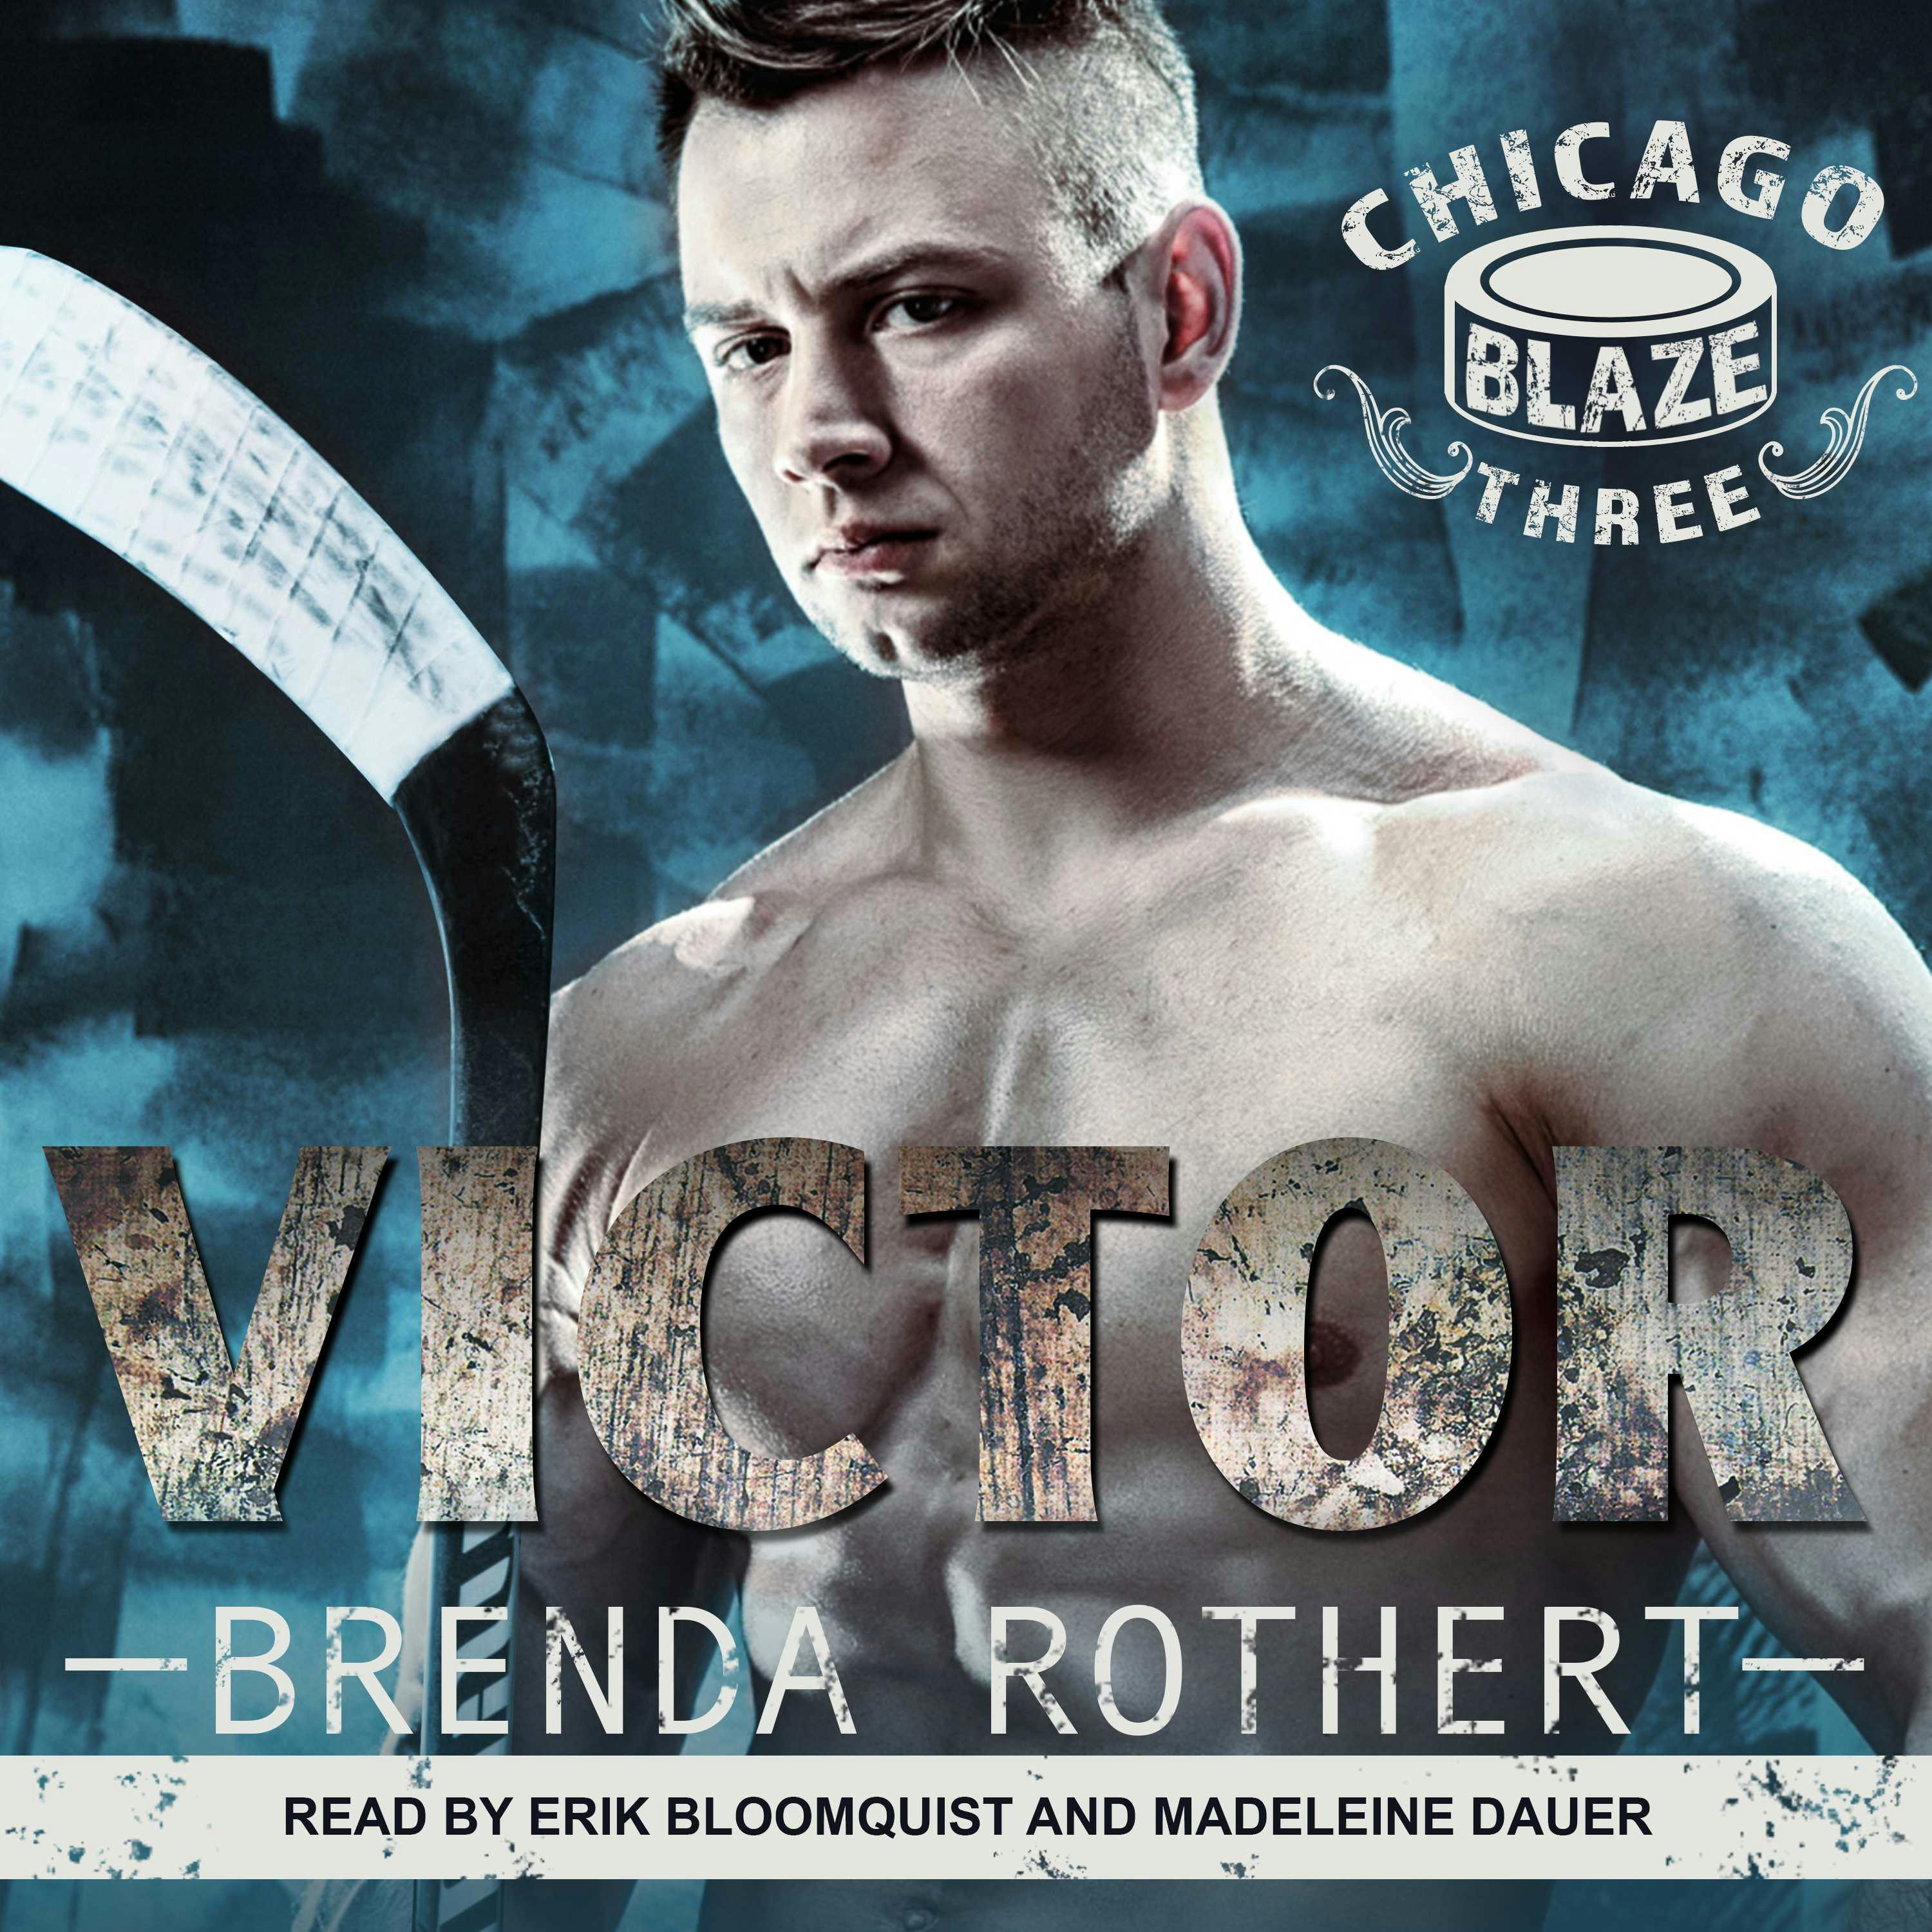 Victor: Chicago Blaze, Three - undefined